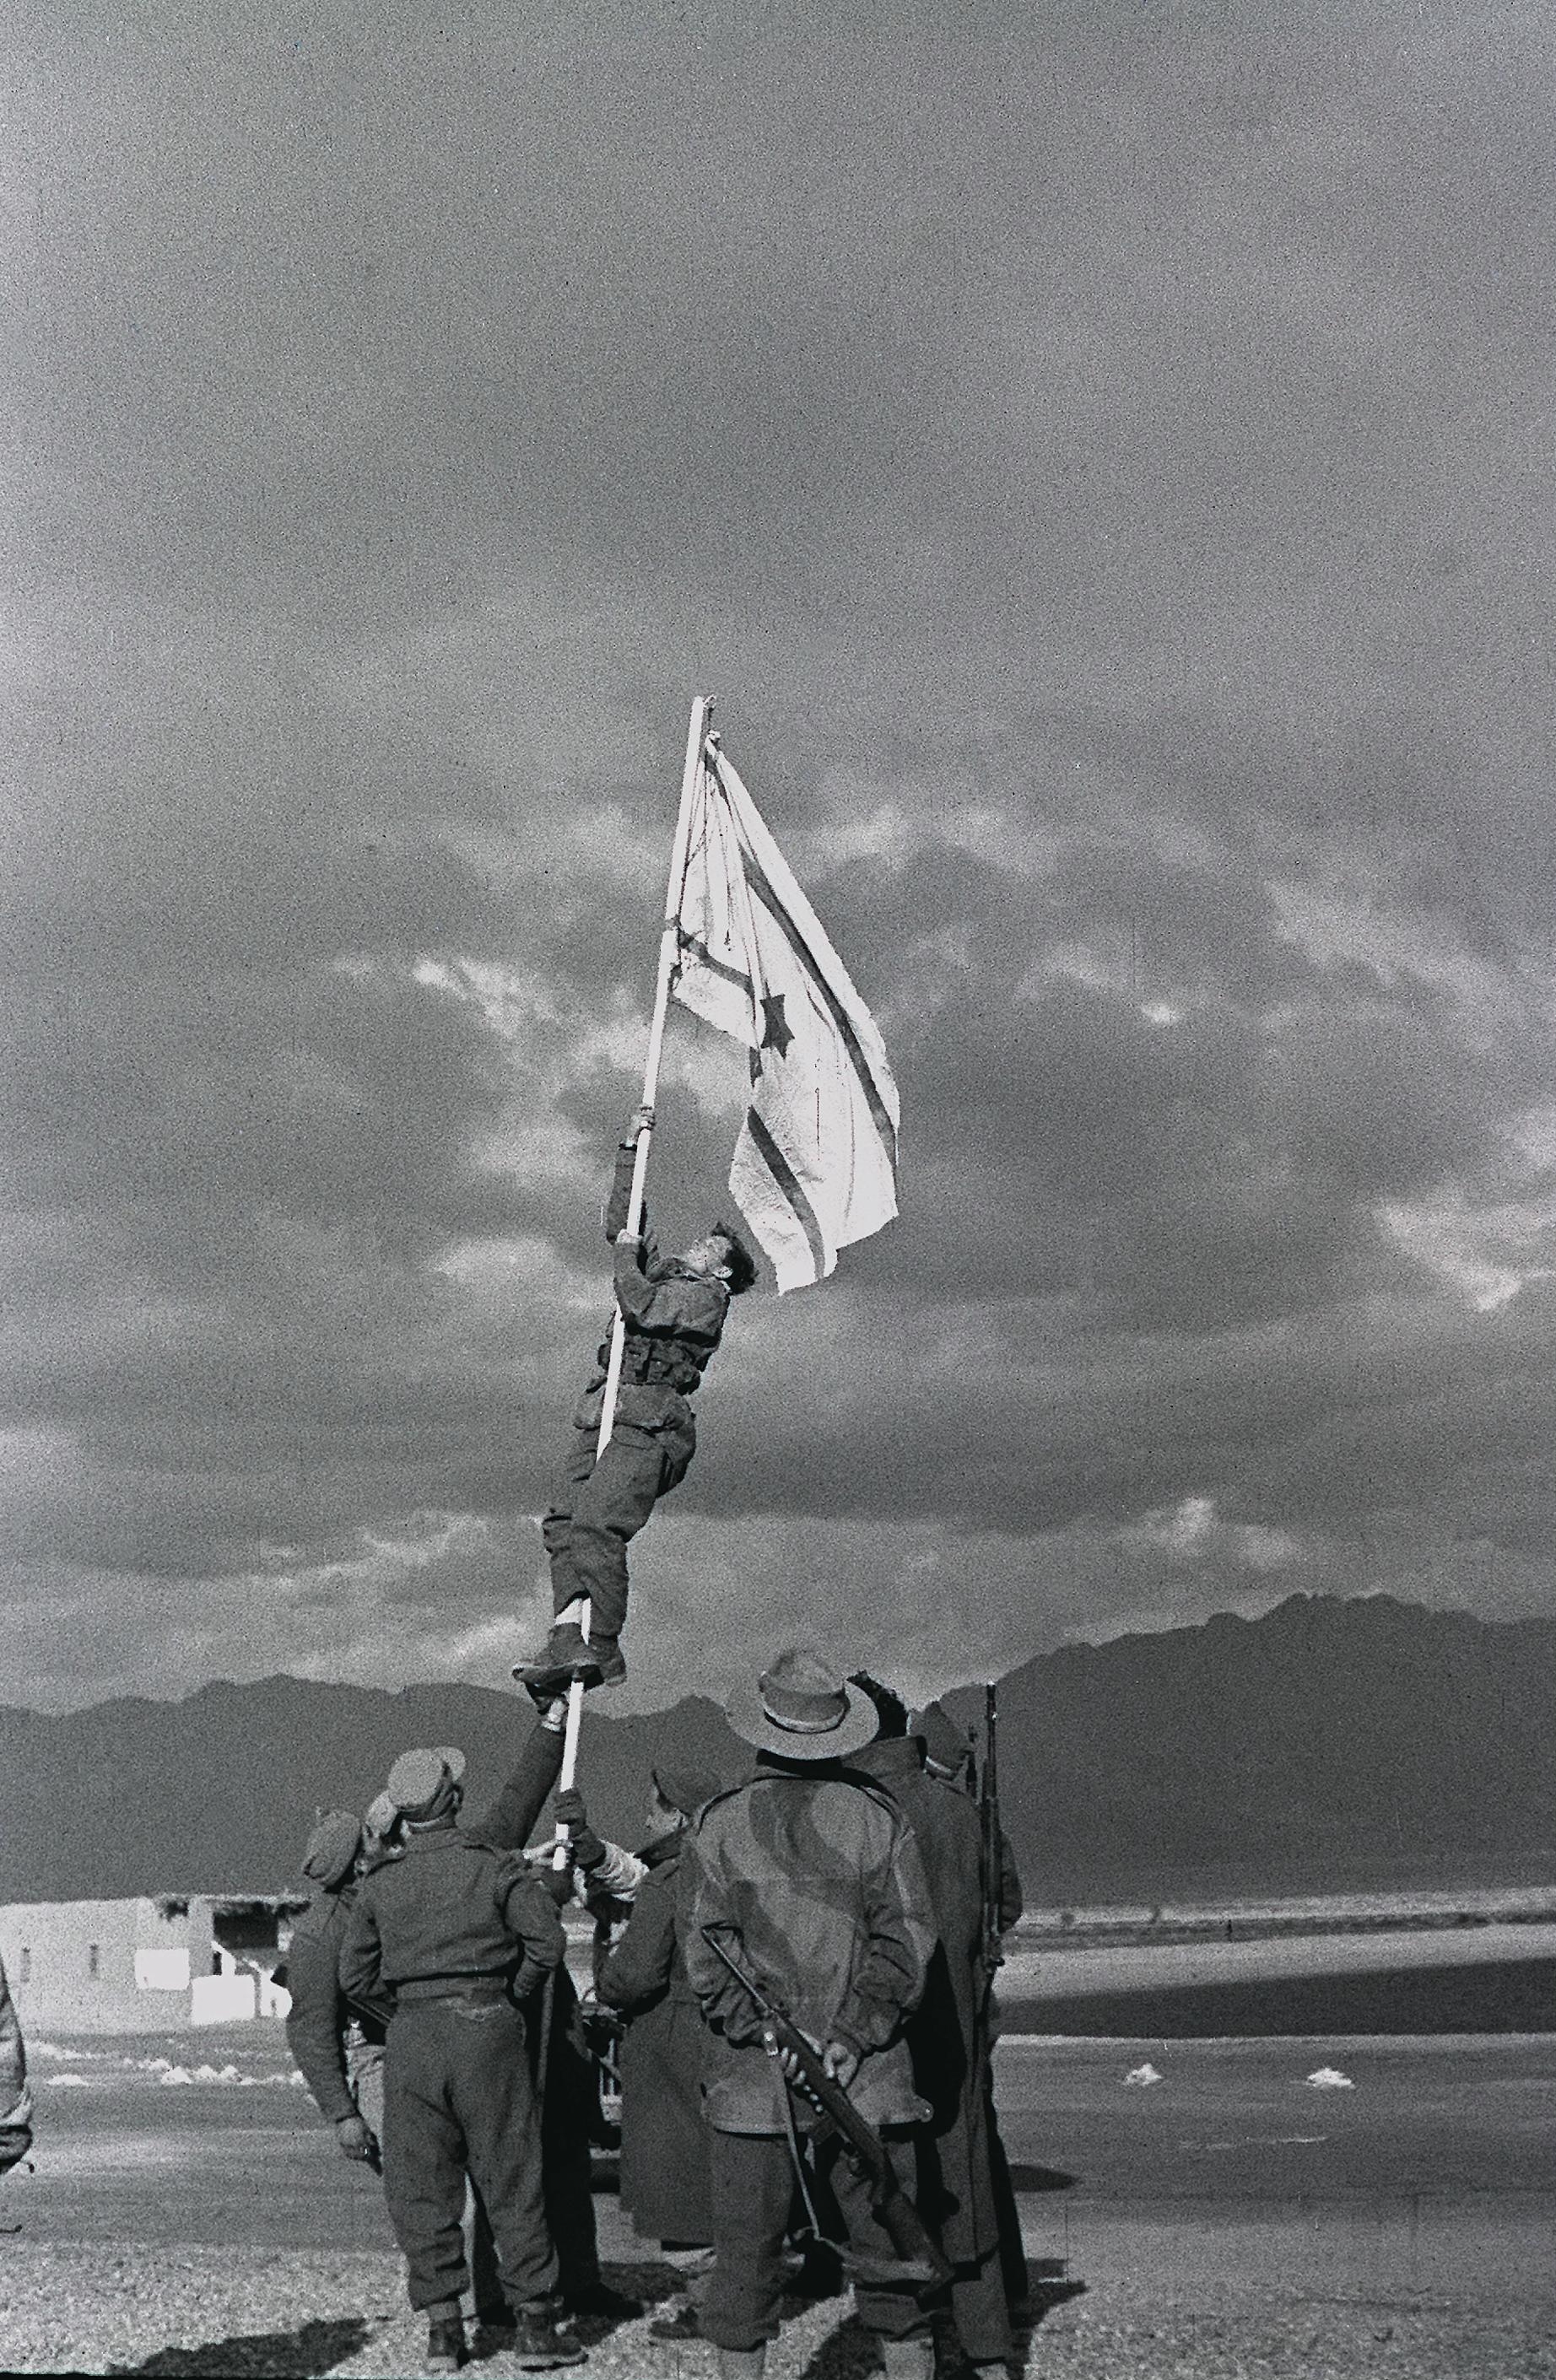 Водружение самодельного флага Израиля в Эйлате, ознаменовавшее окончание войны за независимость.
Micha Perry / Wikimedia